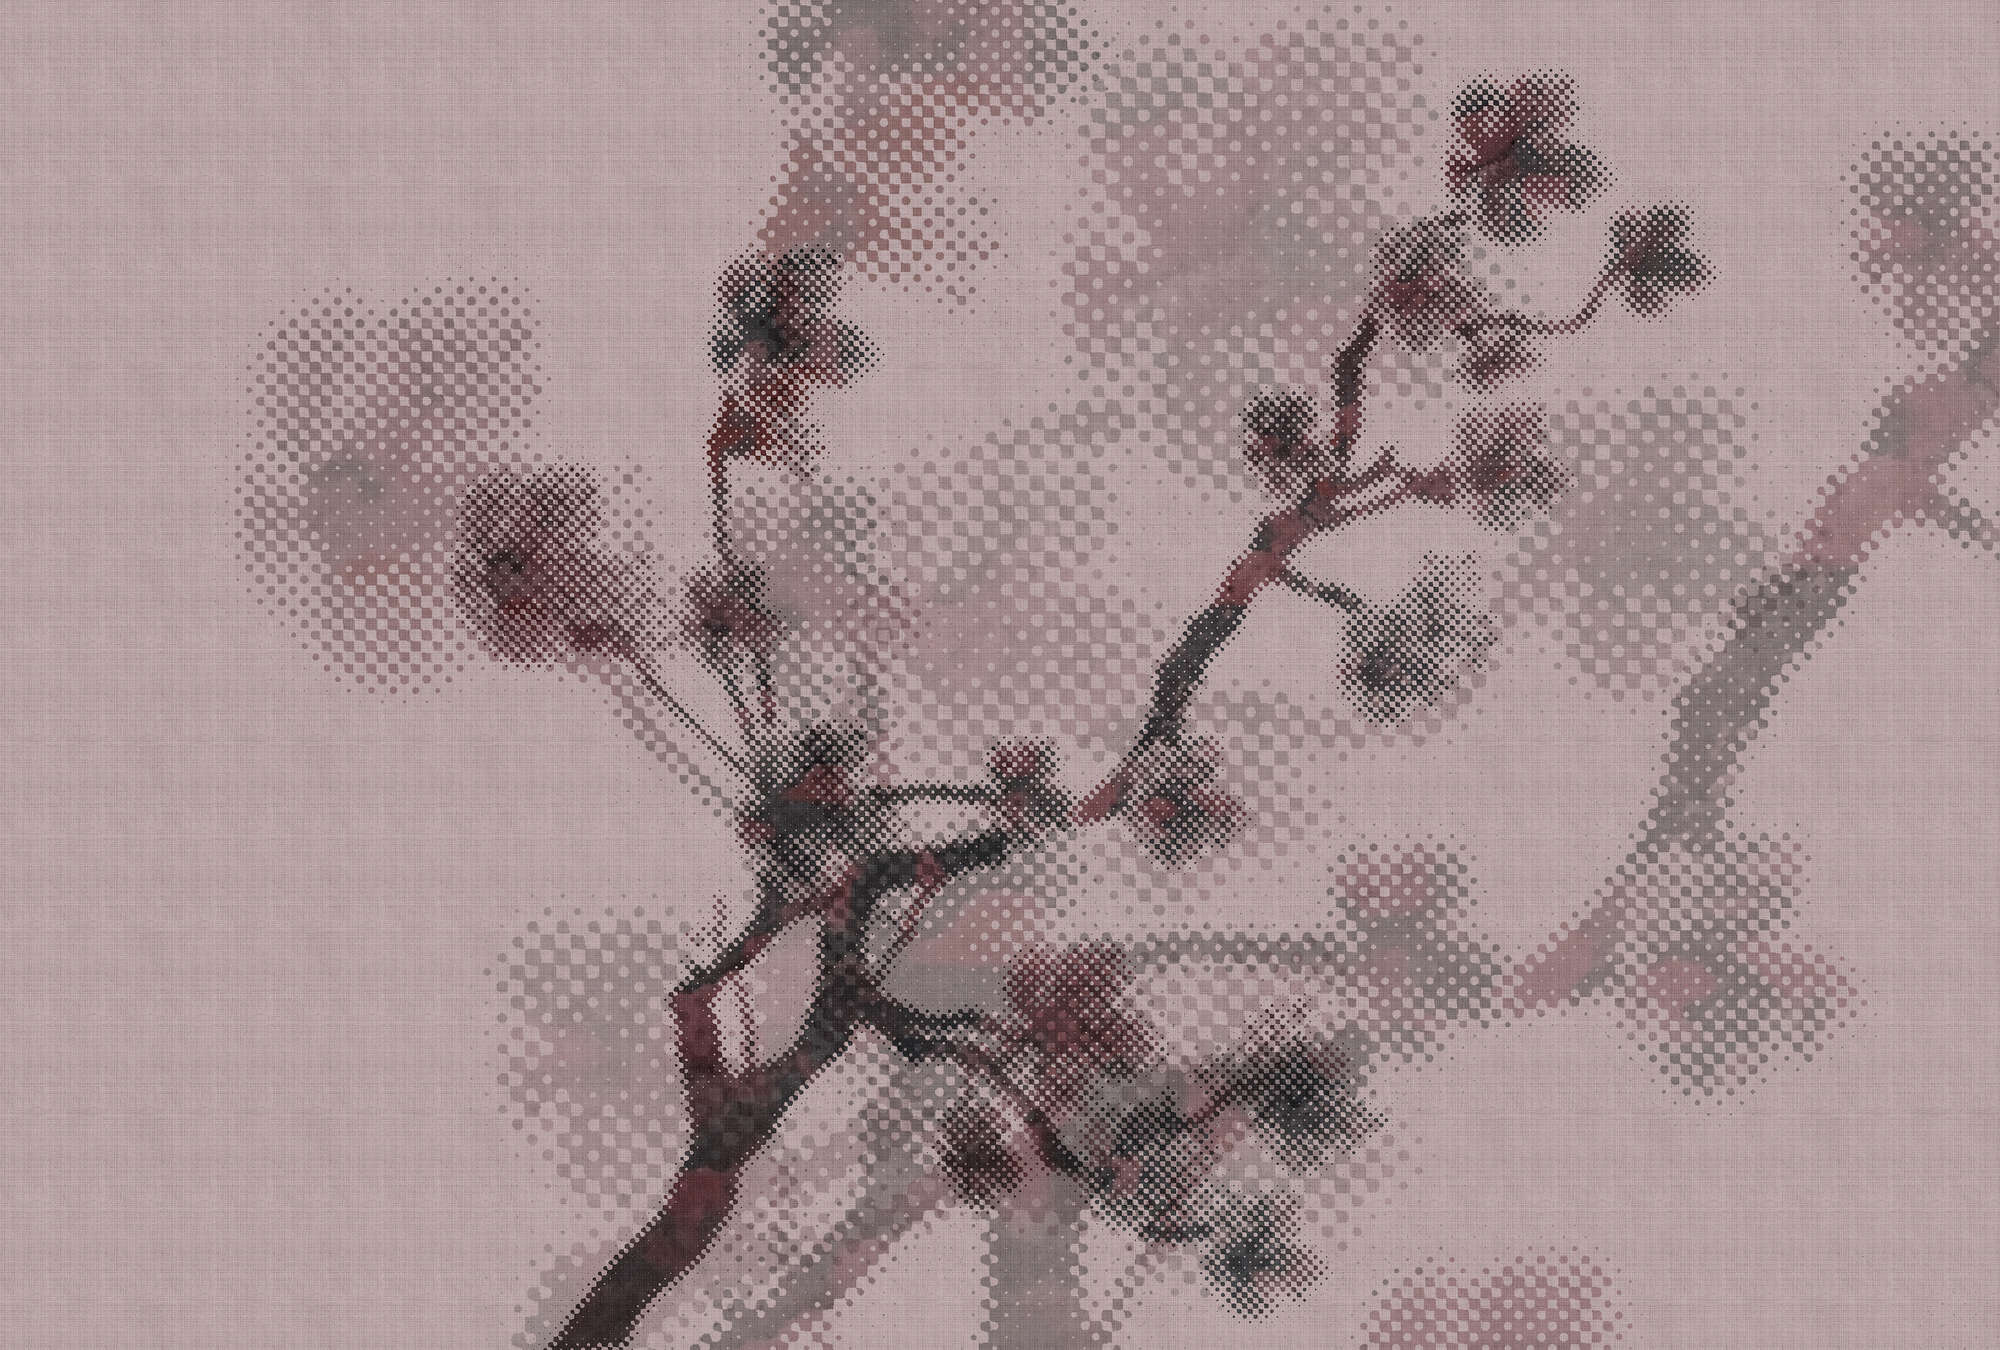             Twigs 3 - Fotomurali con motivi naturalistici e design a pixel - struttura in lino naturale - tessuto non tessuto con struttura rosa
        